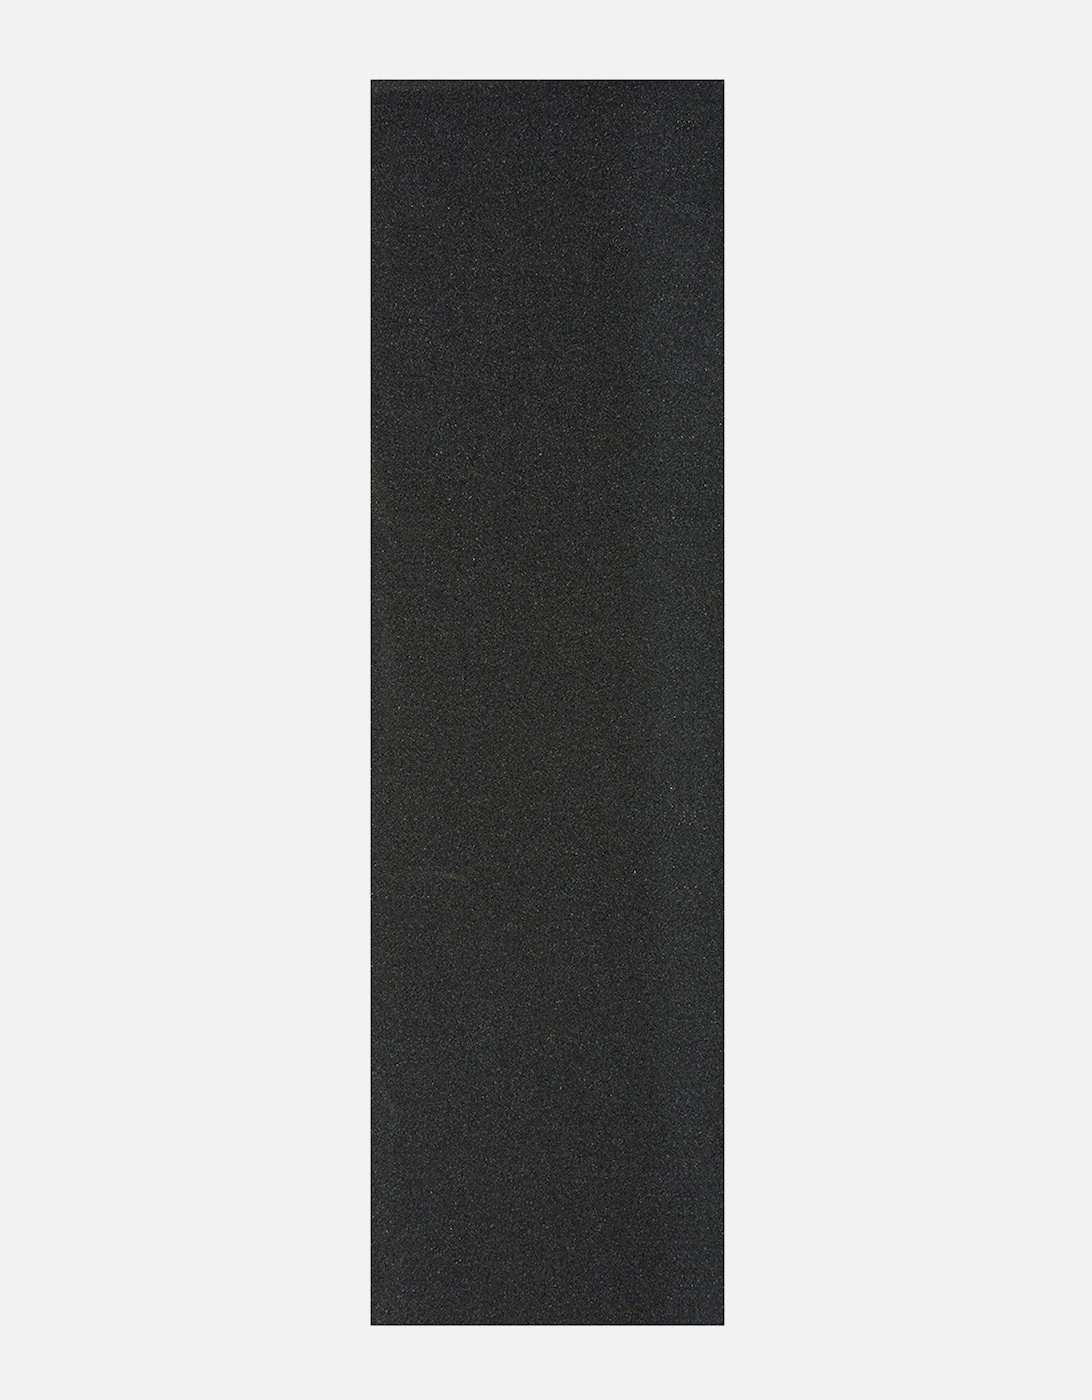 10" Width Griptape Sheet - Black, 2 of 1